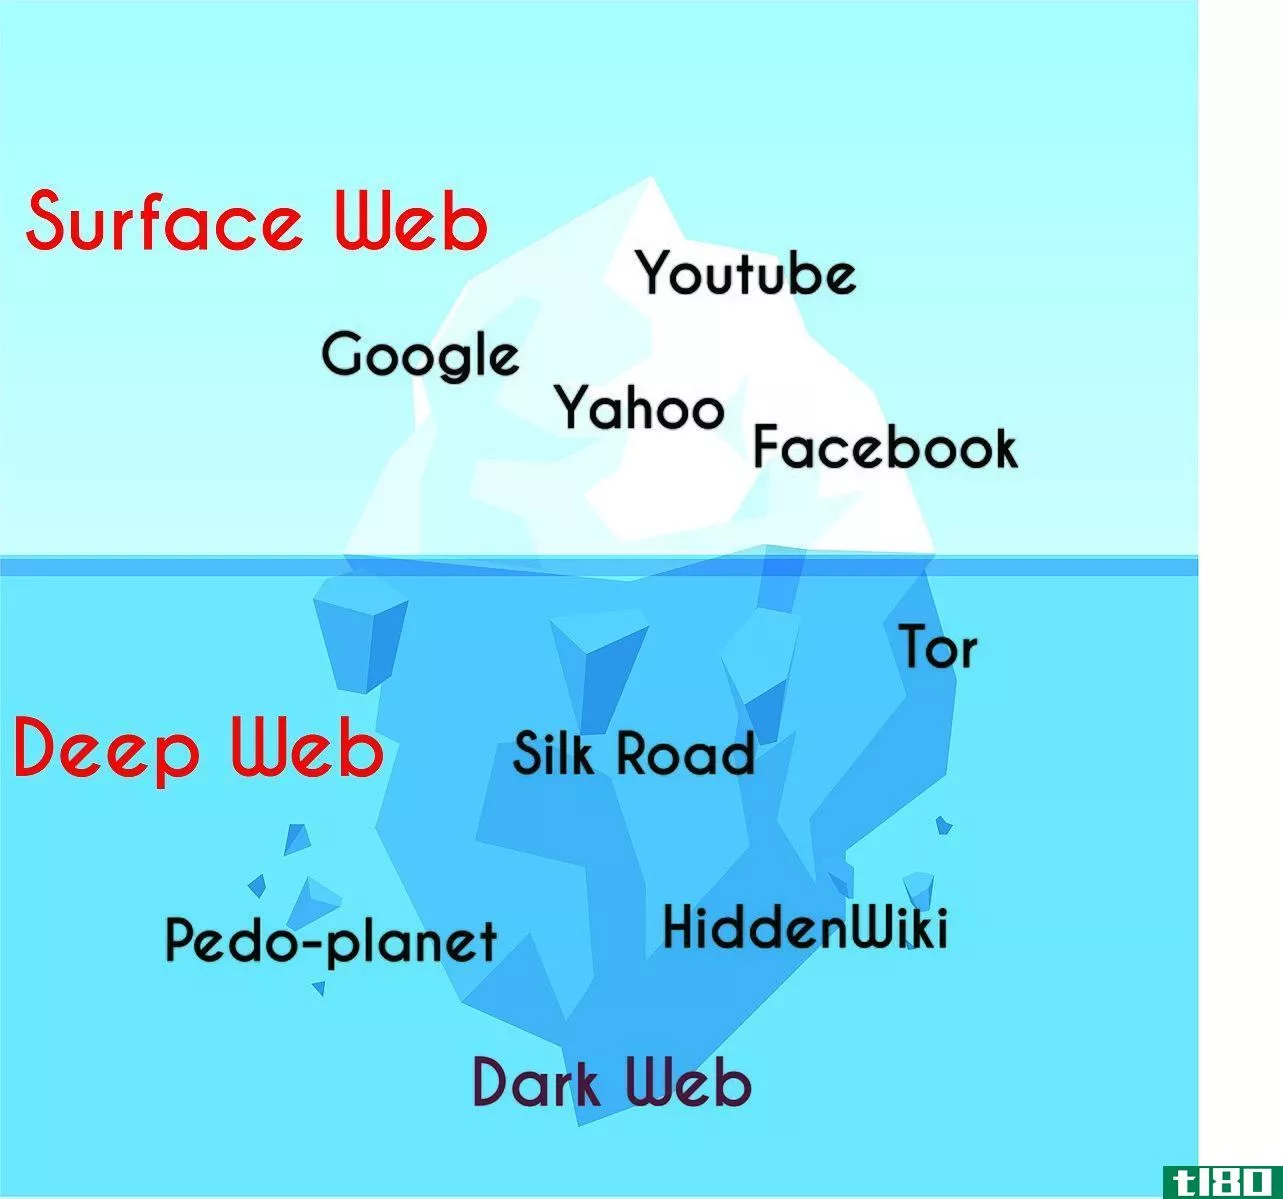 深网(deep web)和暗网(dark web)的区别